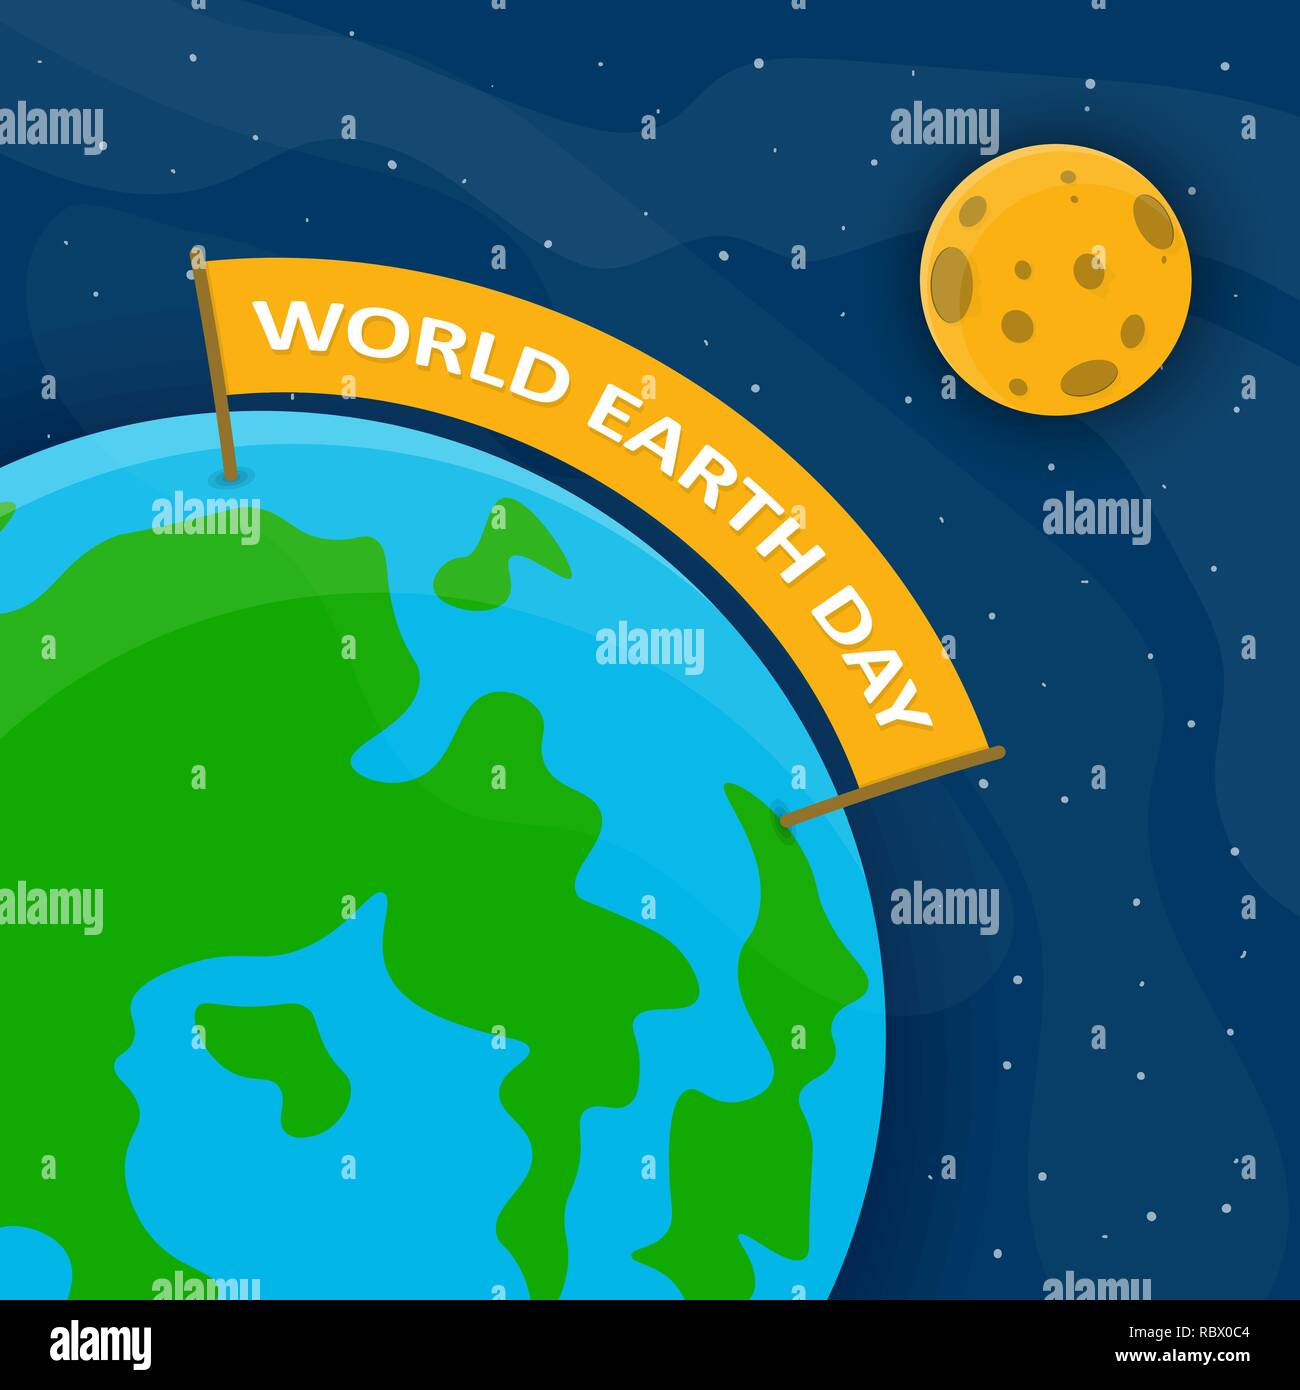 World Earth Day Poster mit Globus und Farbband im Weltraum. Vector Illustration. Globus mit festlichen Ribbon und Mond, Ökologie Konzept Stock Vektor